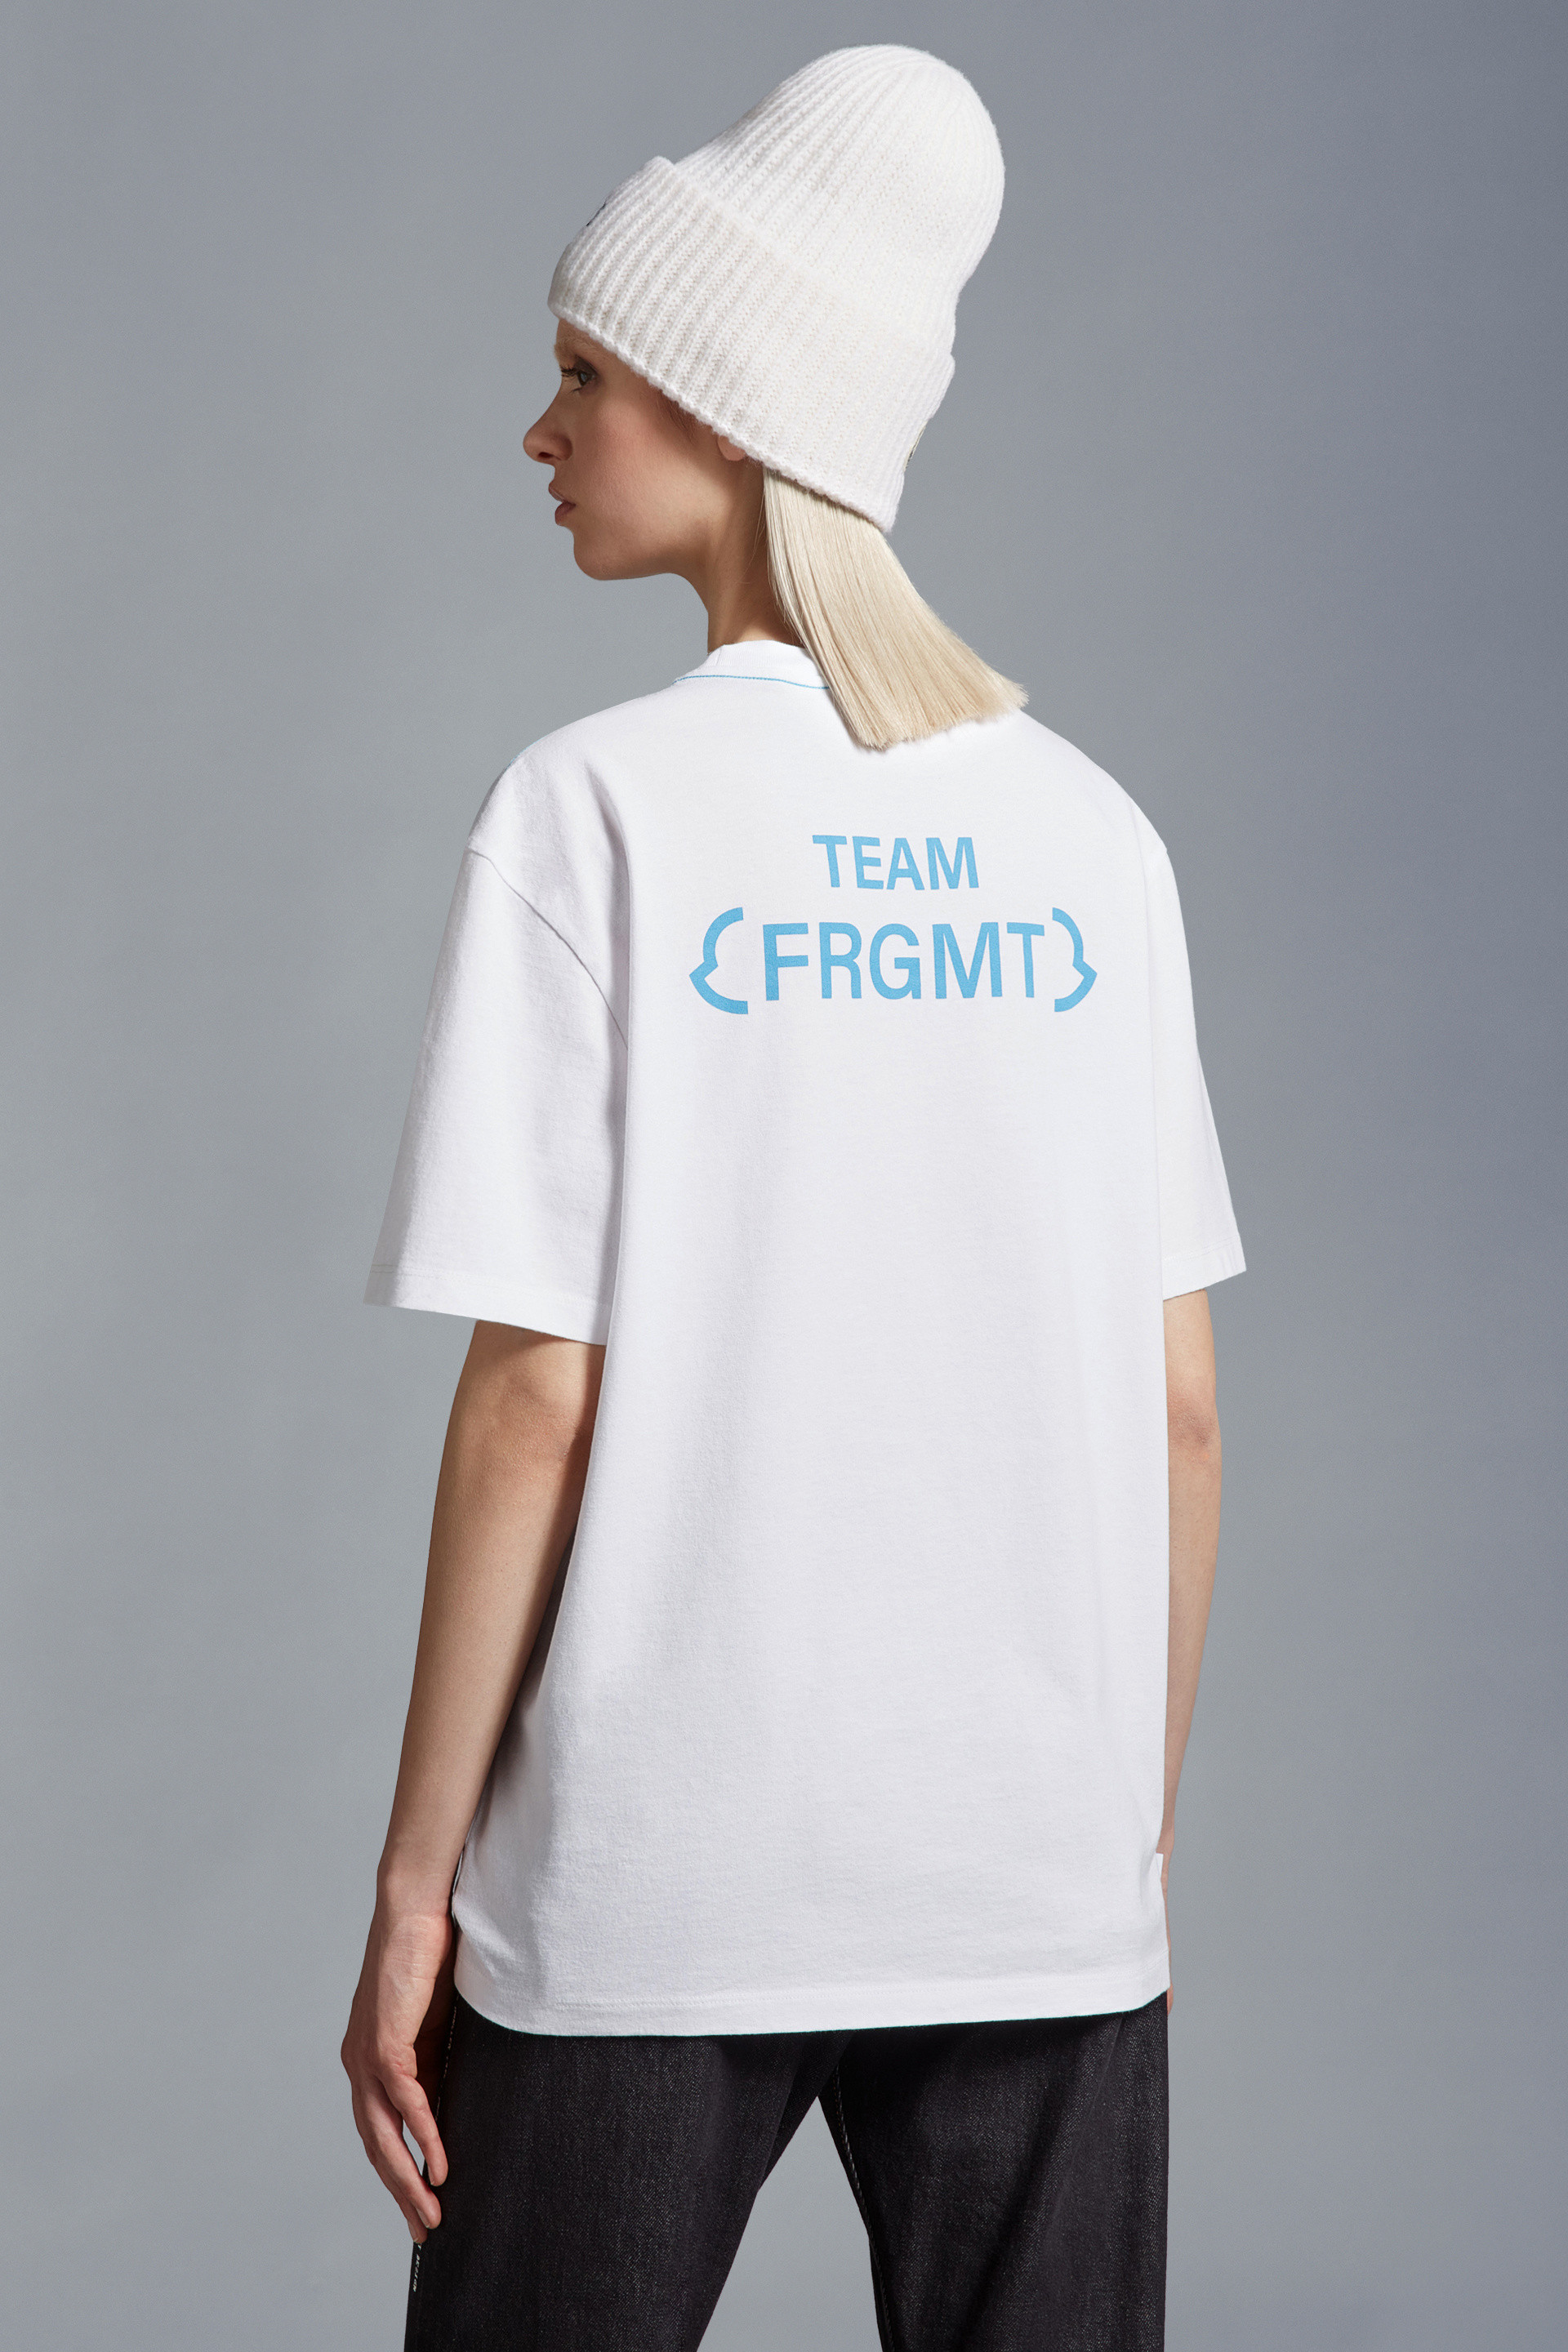 オプティカルホワイト Tシャツ : Moncler x Frgmnt 向けの Genius